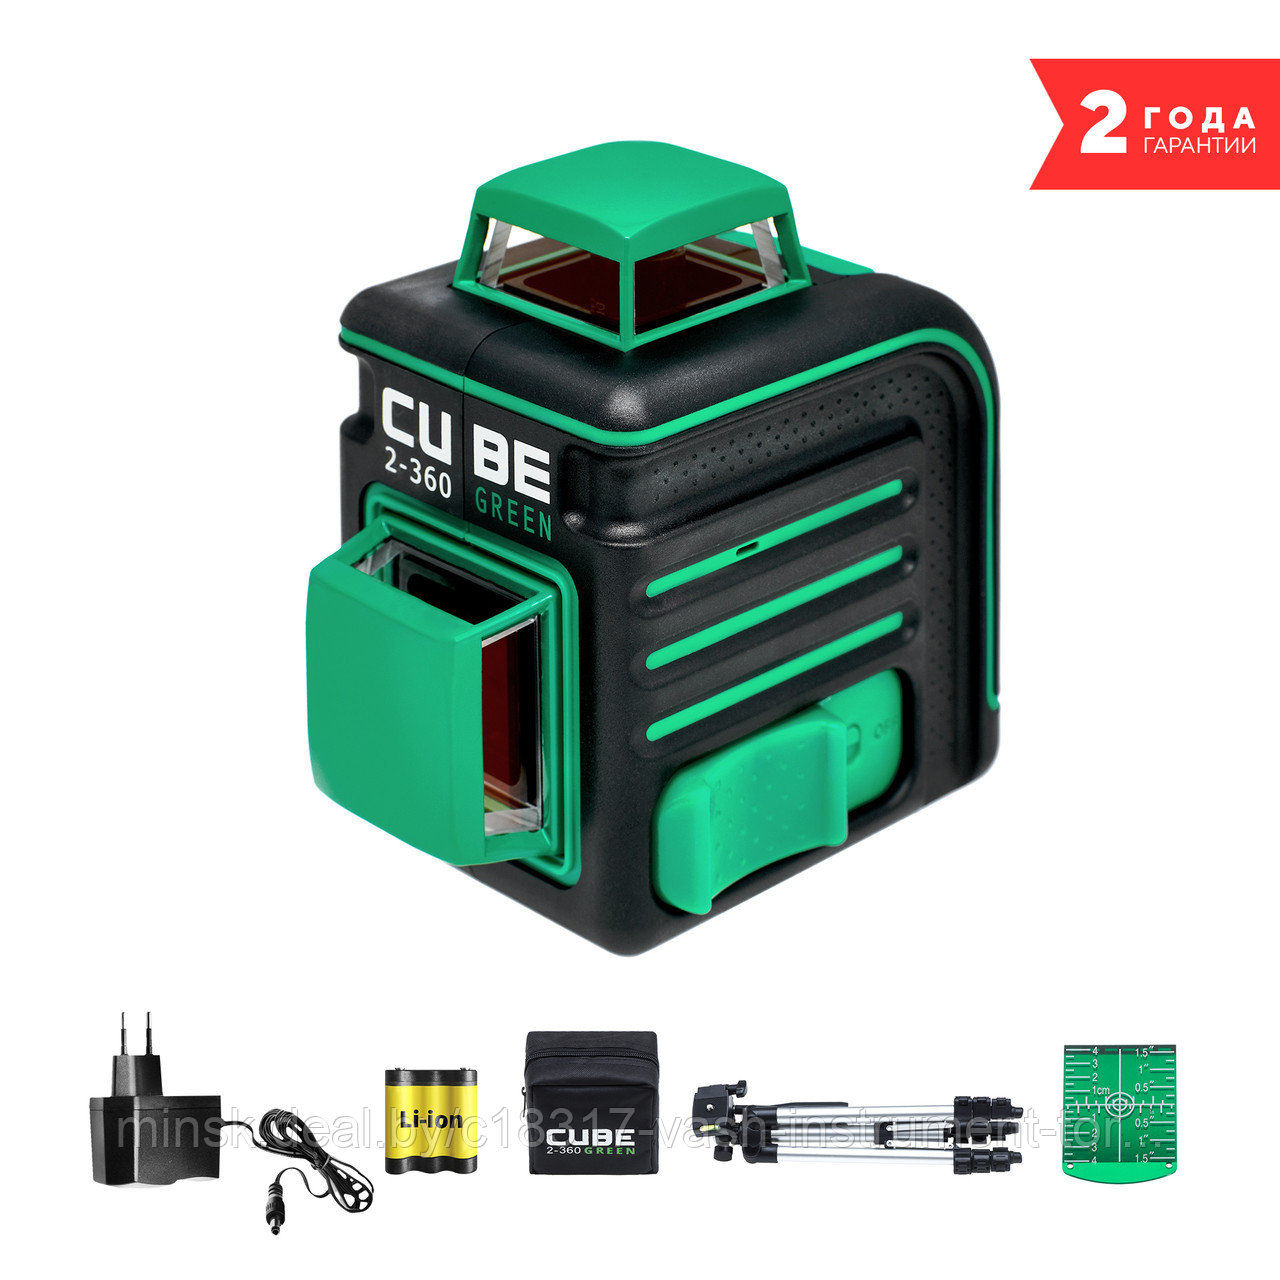 Лазерный нивелир ADA CUBE 2-360 Green Professional Edition